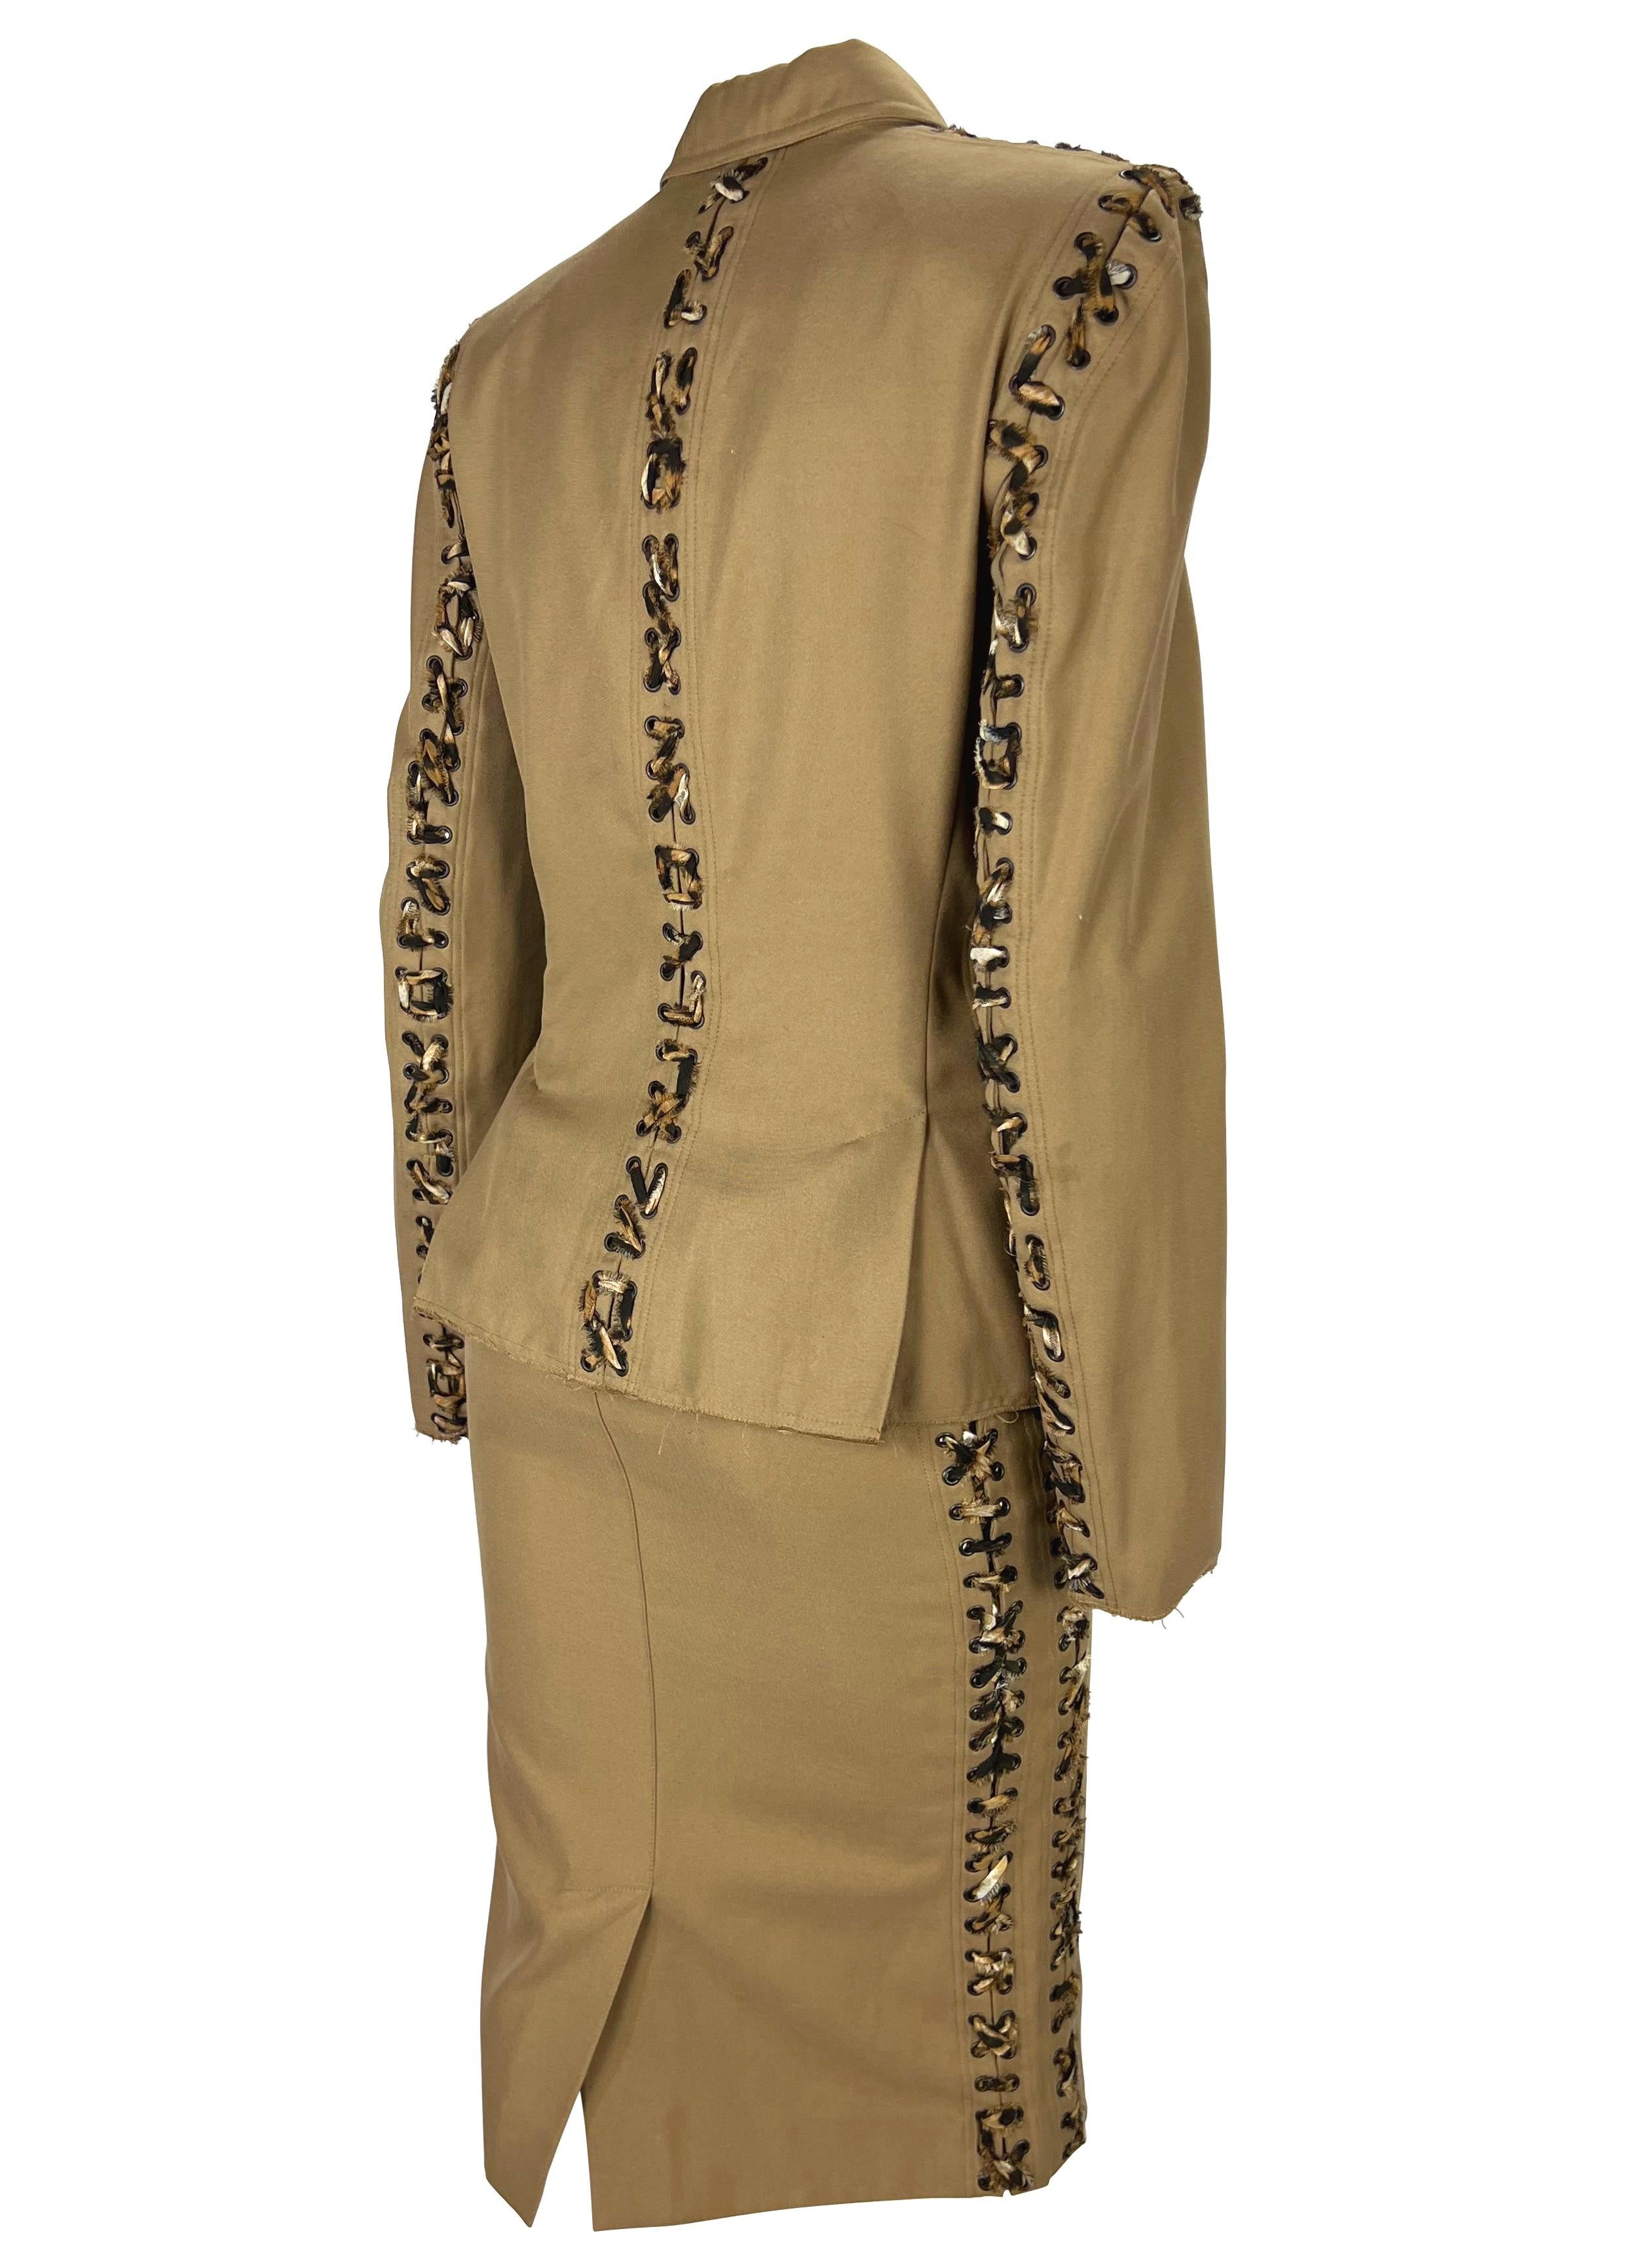 S/S 2002 Yves Saint Laurent by Tom Ford Safari Cheetah Print Lace-Up Khaki Suit (costume) en vente 2